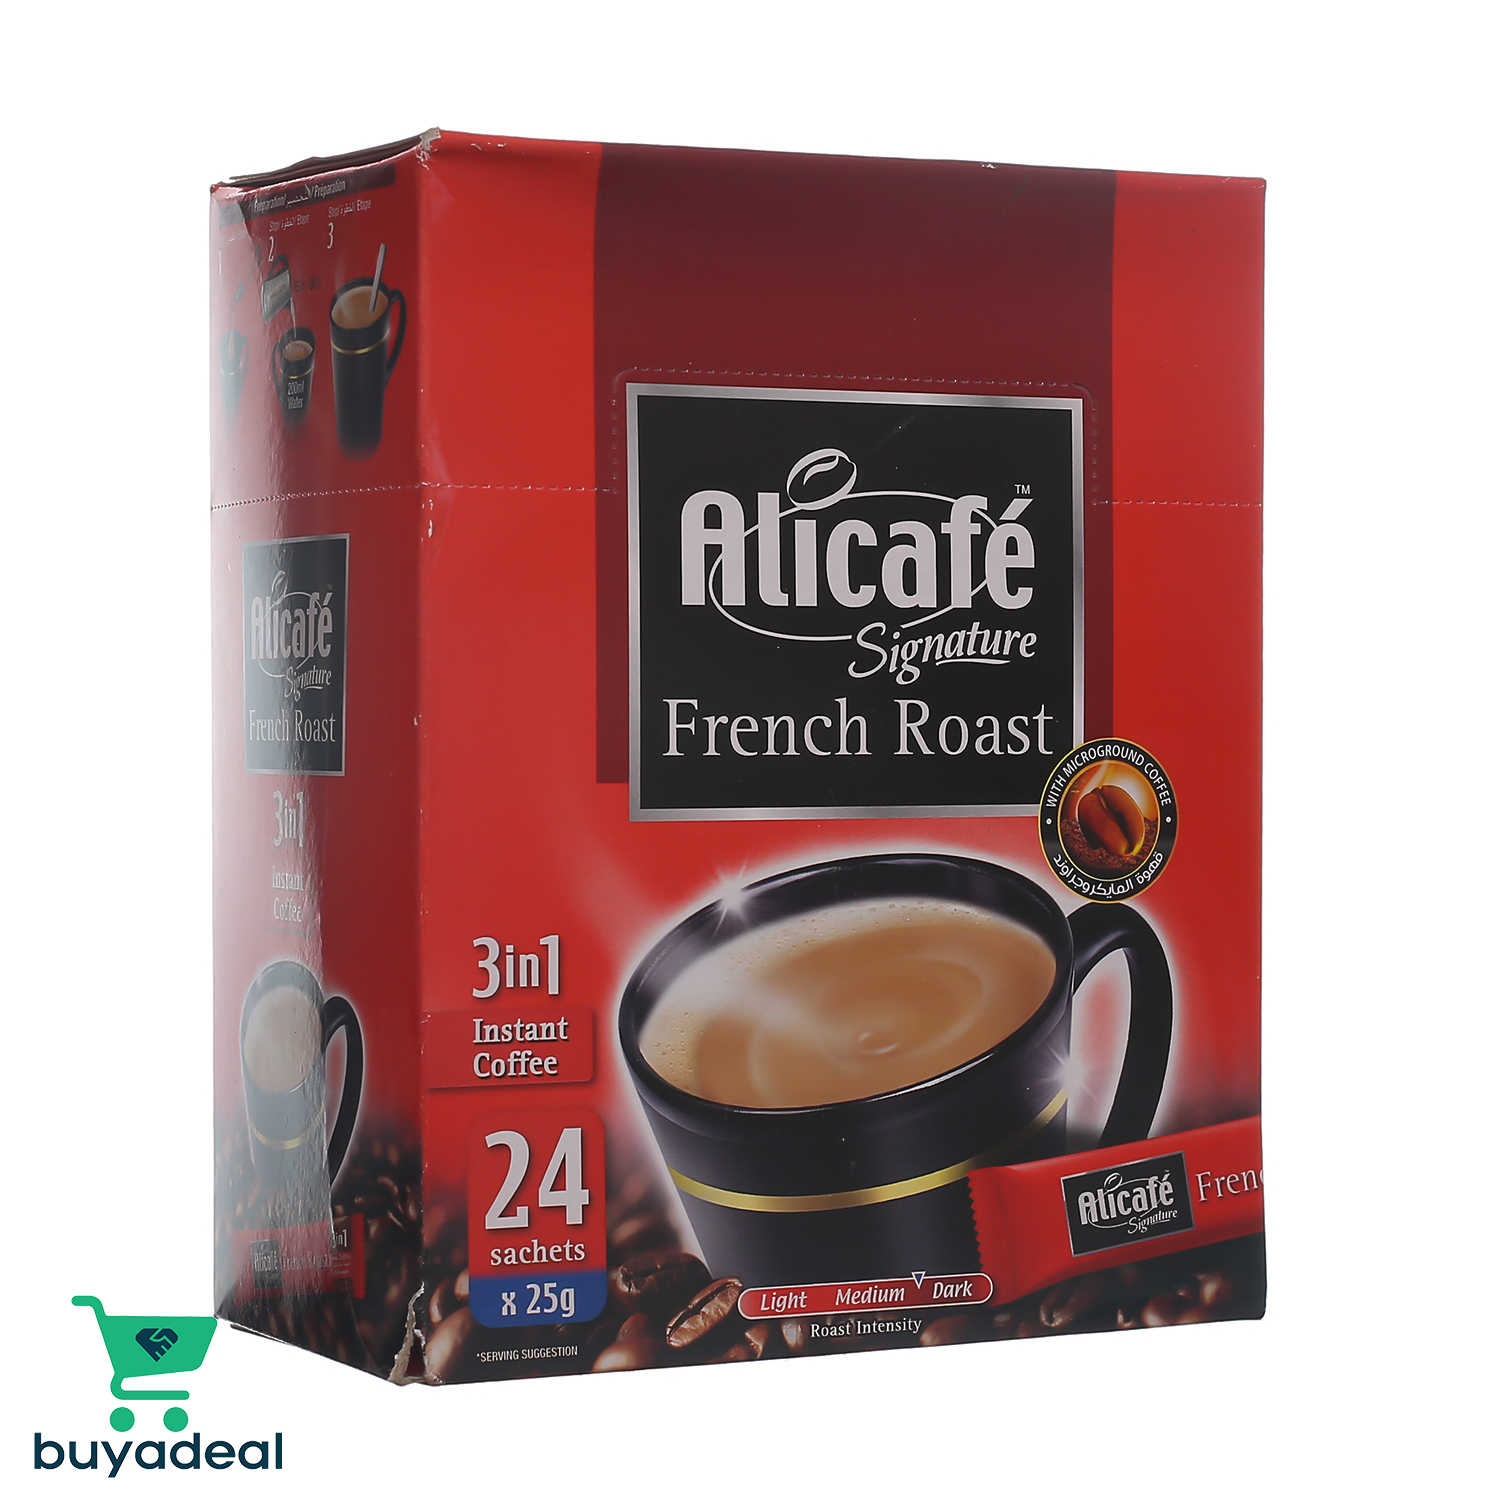 Buyadeal Product Alicafe French Roast 20g x 24 Sachets